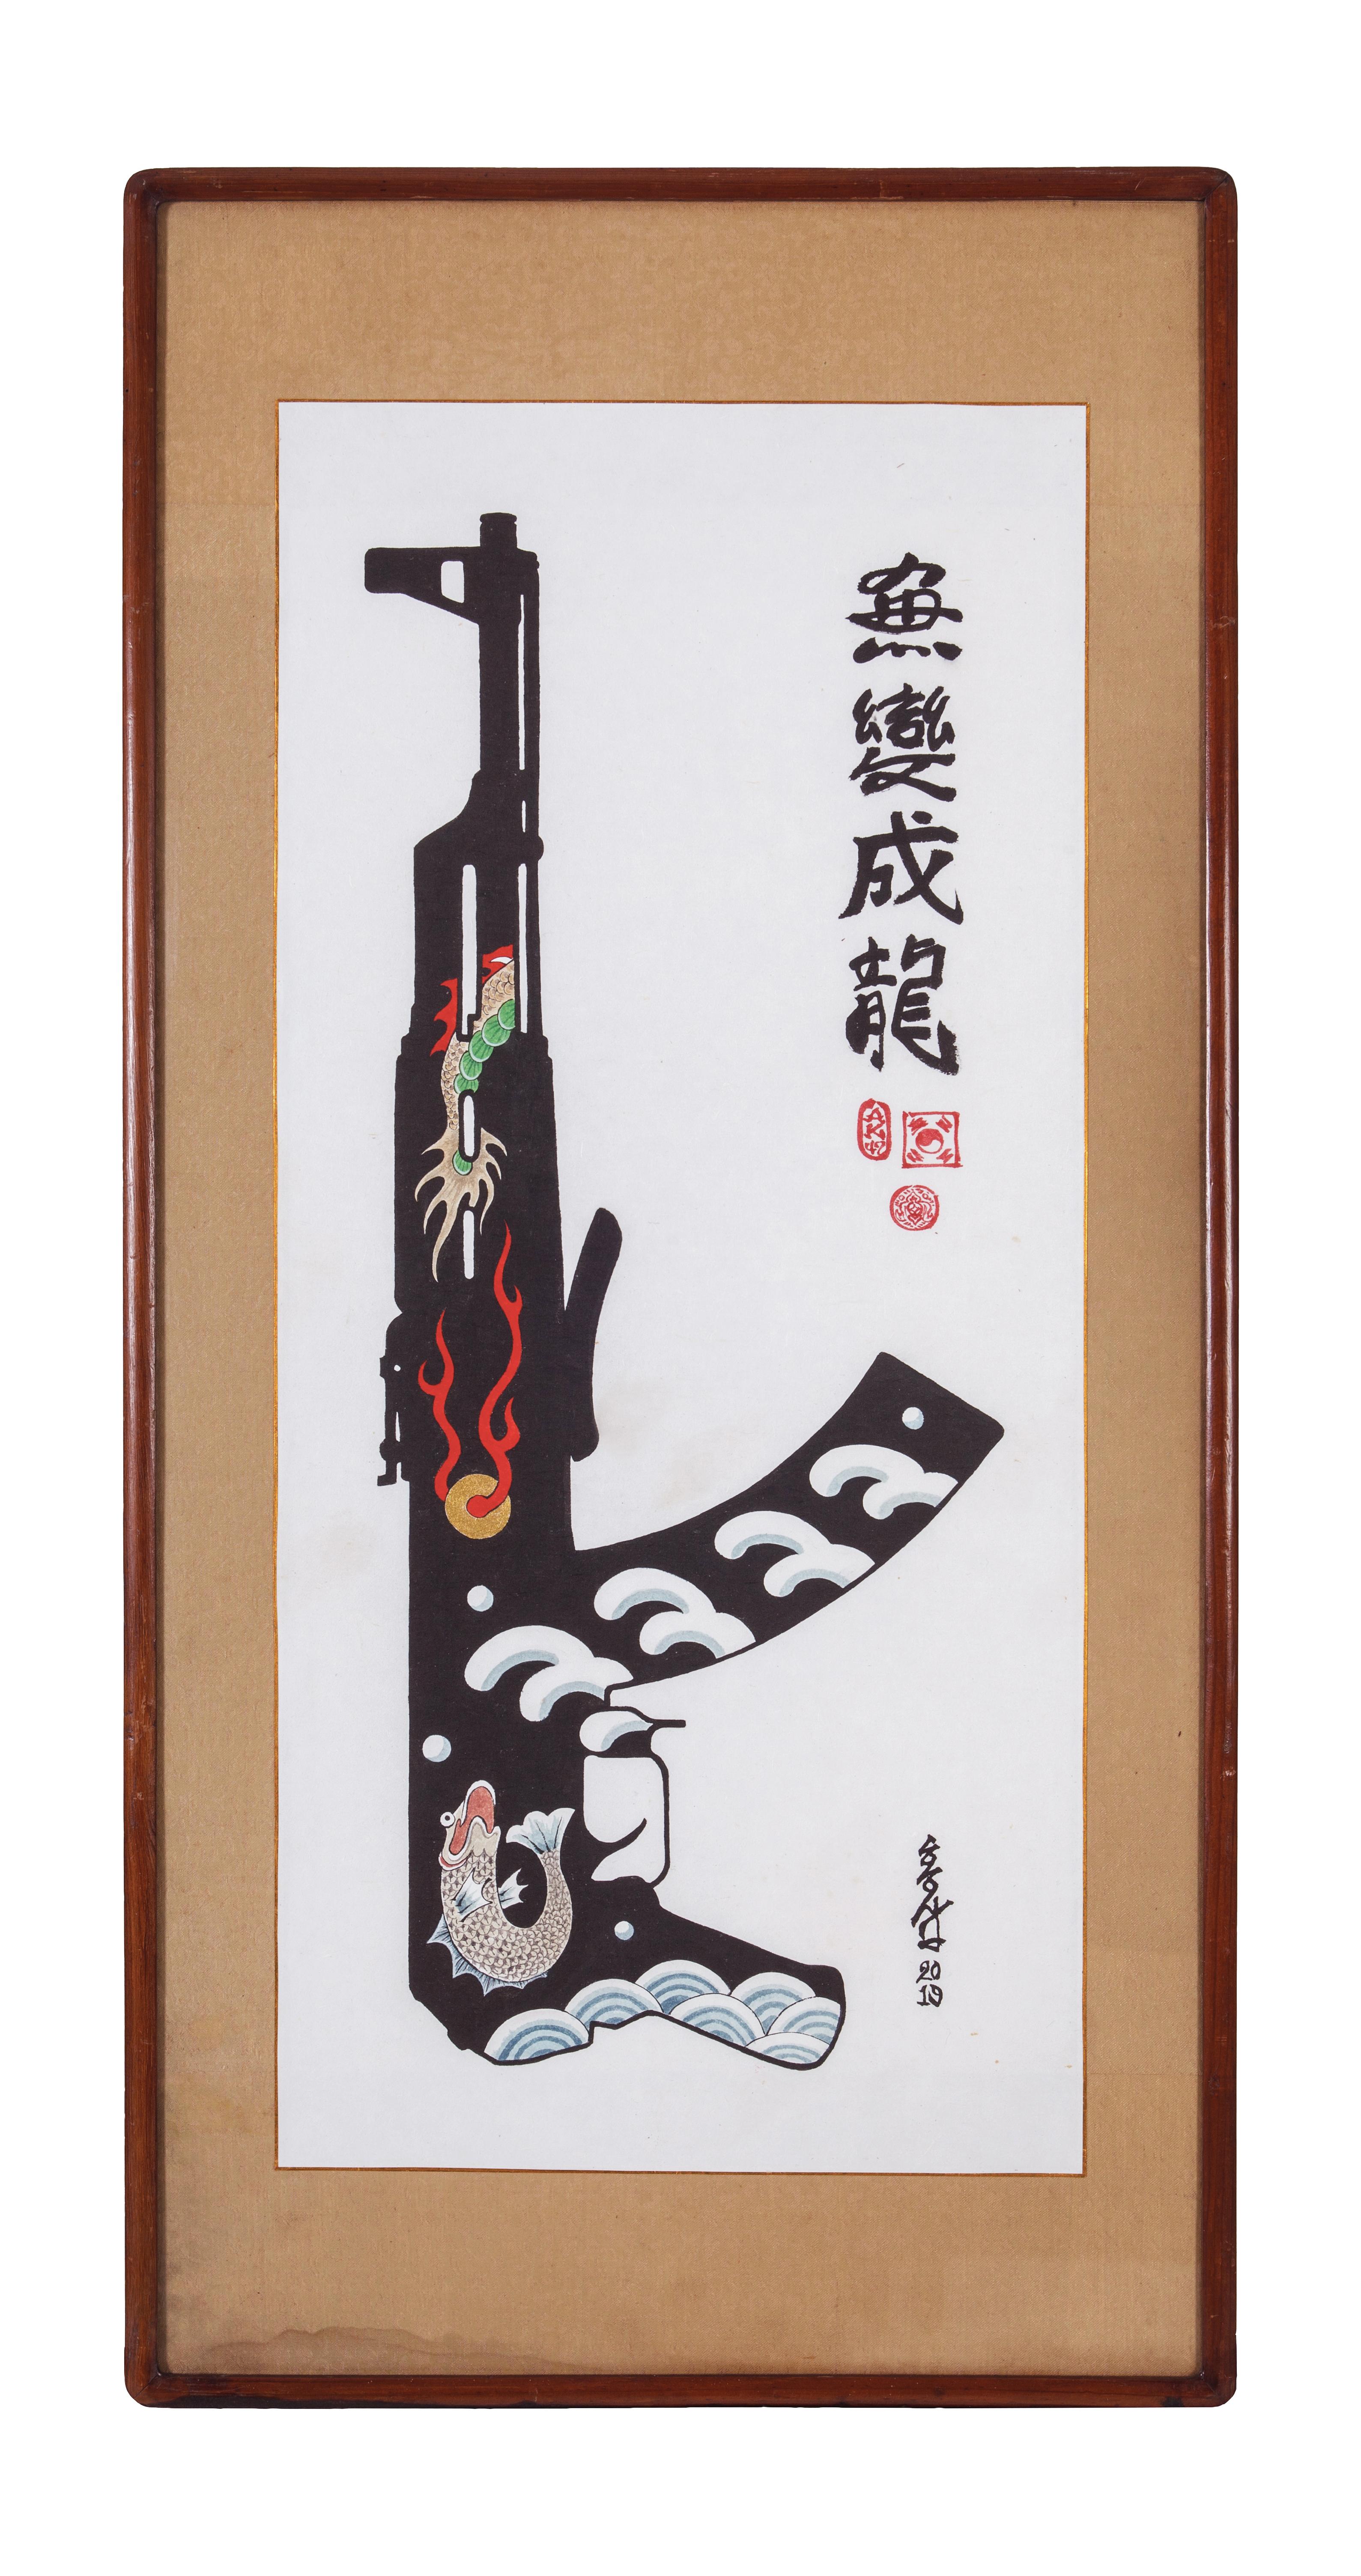 HongSik Kim Abstract Painting - Ak-47 AKS Fish become Dragon